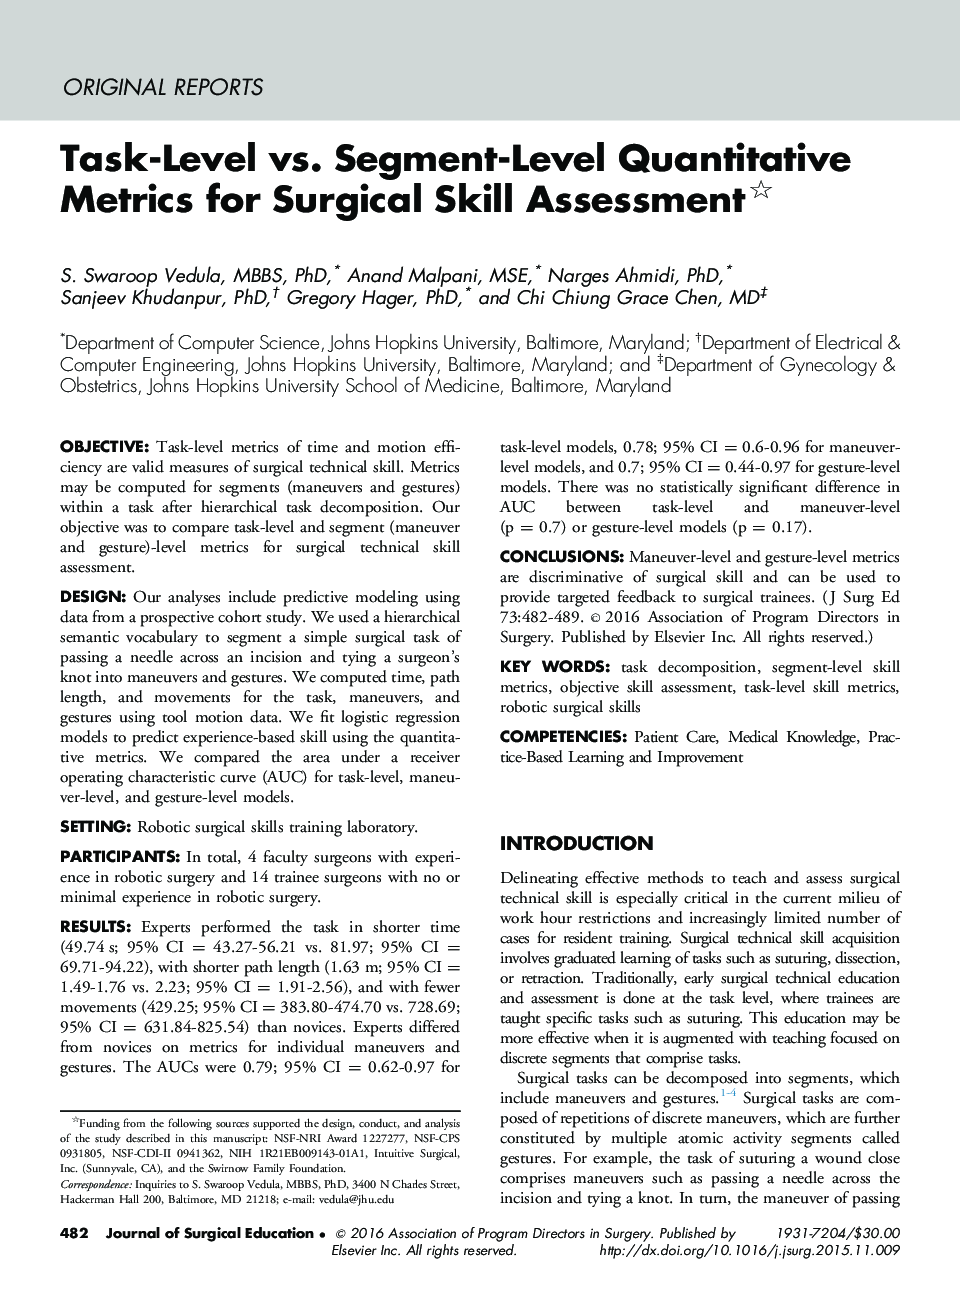 معیارهای کمی از سطح کار در مقابل سطح در سطح برای ارزیابی مهارت جراحی 